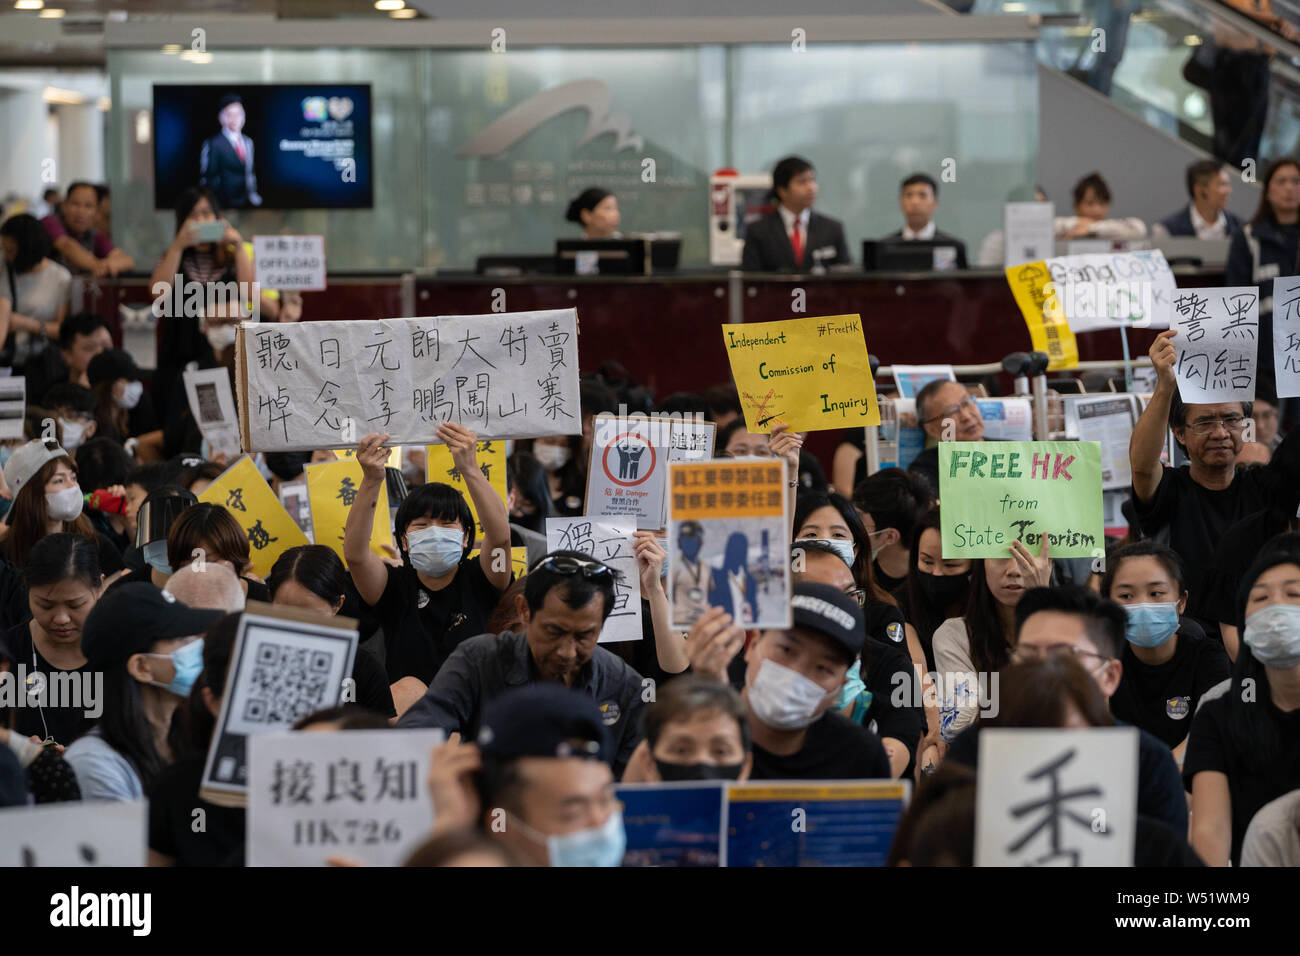 Cientos de manifestantes contra el gobierno organizaron una sentada en protesta por la terminal del aeropuerto internacional de Hong Kong, el primero de los tres días consecutivos de manifestaciones después de los enfrentamientos de la semana pasada provocó temores de que una confrontación más amplia podría estallar en la ciudad. Foto de stock